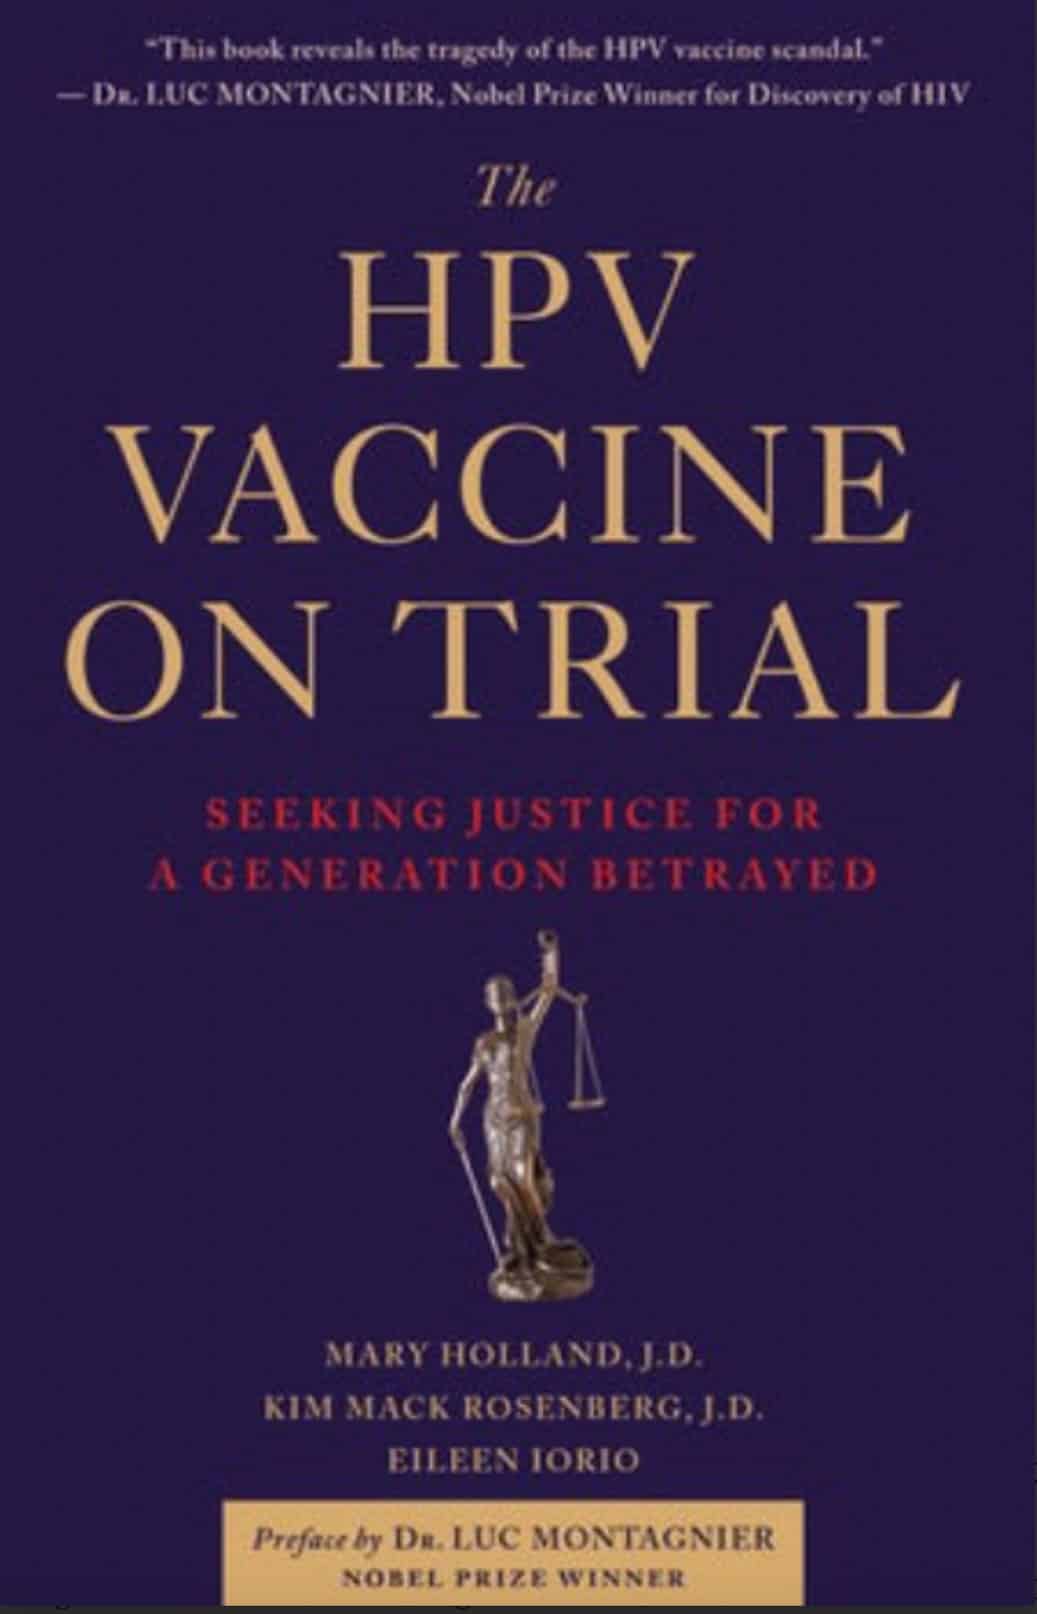 Temná historie klinických testů vakcíny Gardasil proti HPV (spoiler: není „bezpečná a účinná”) • David Formánek - Otevři svou mysl • David Formánek